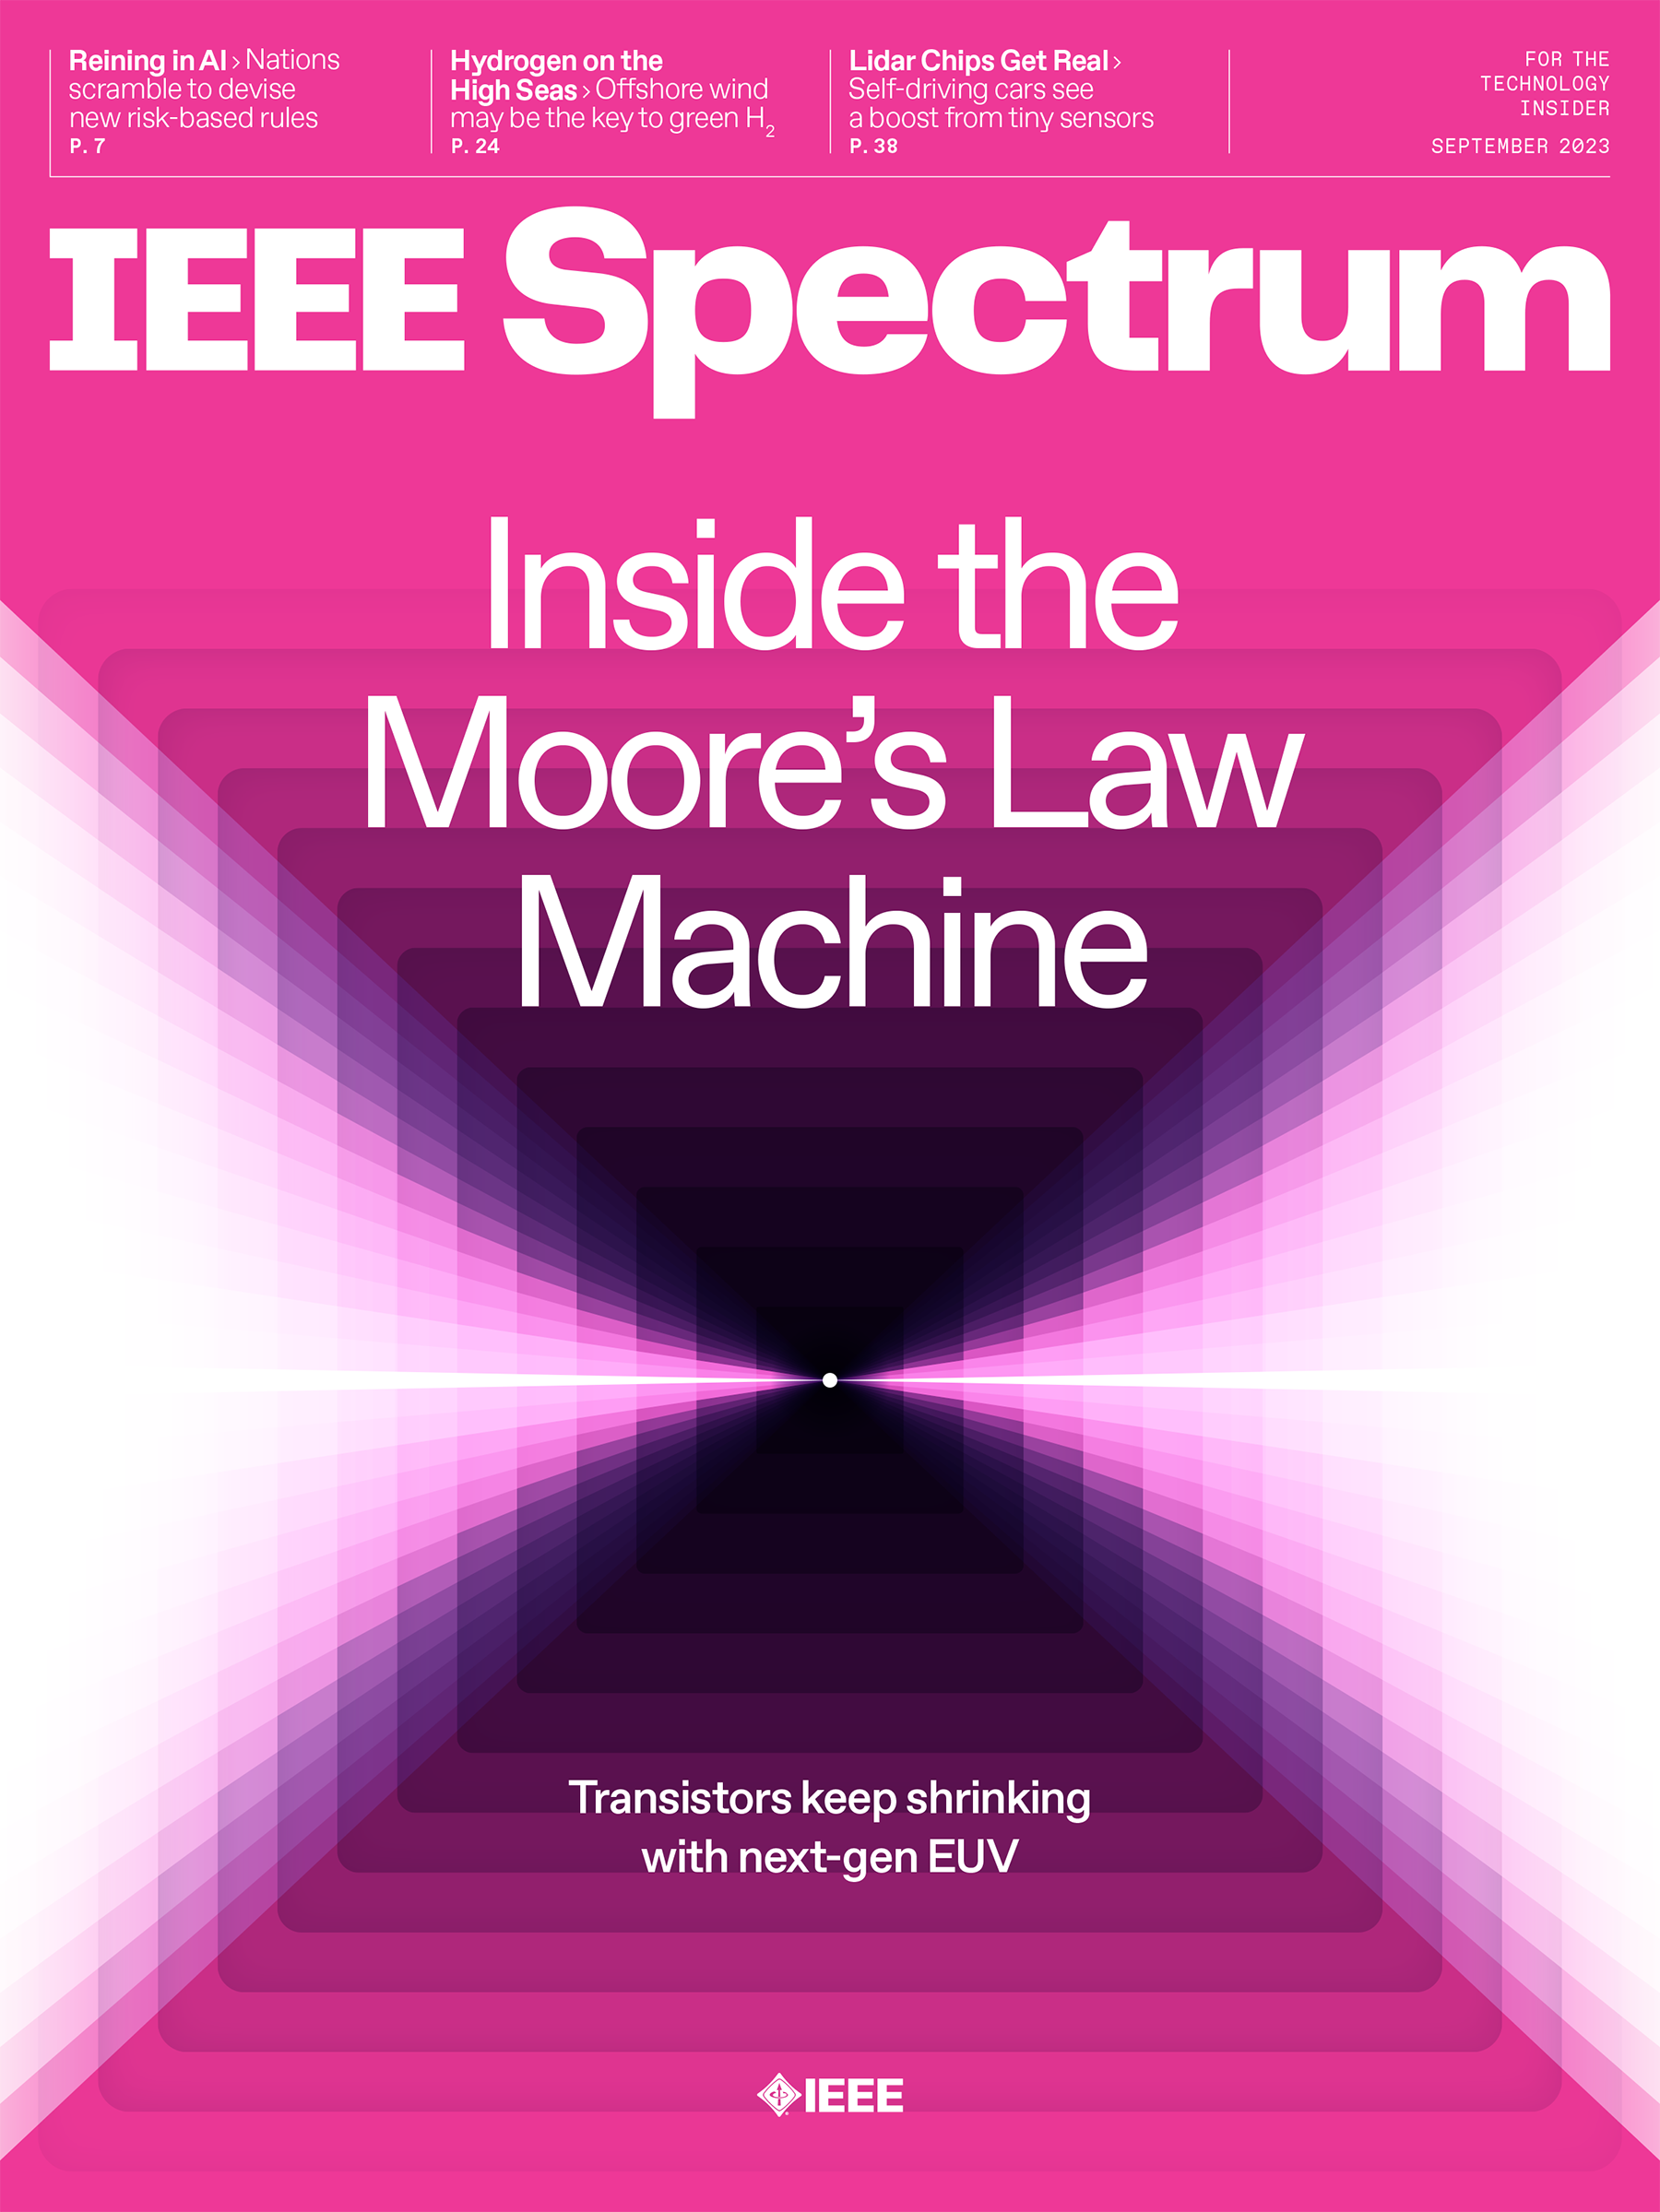 The Best of IEEE Spectrum in 2023